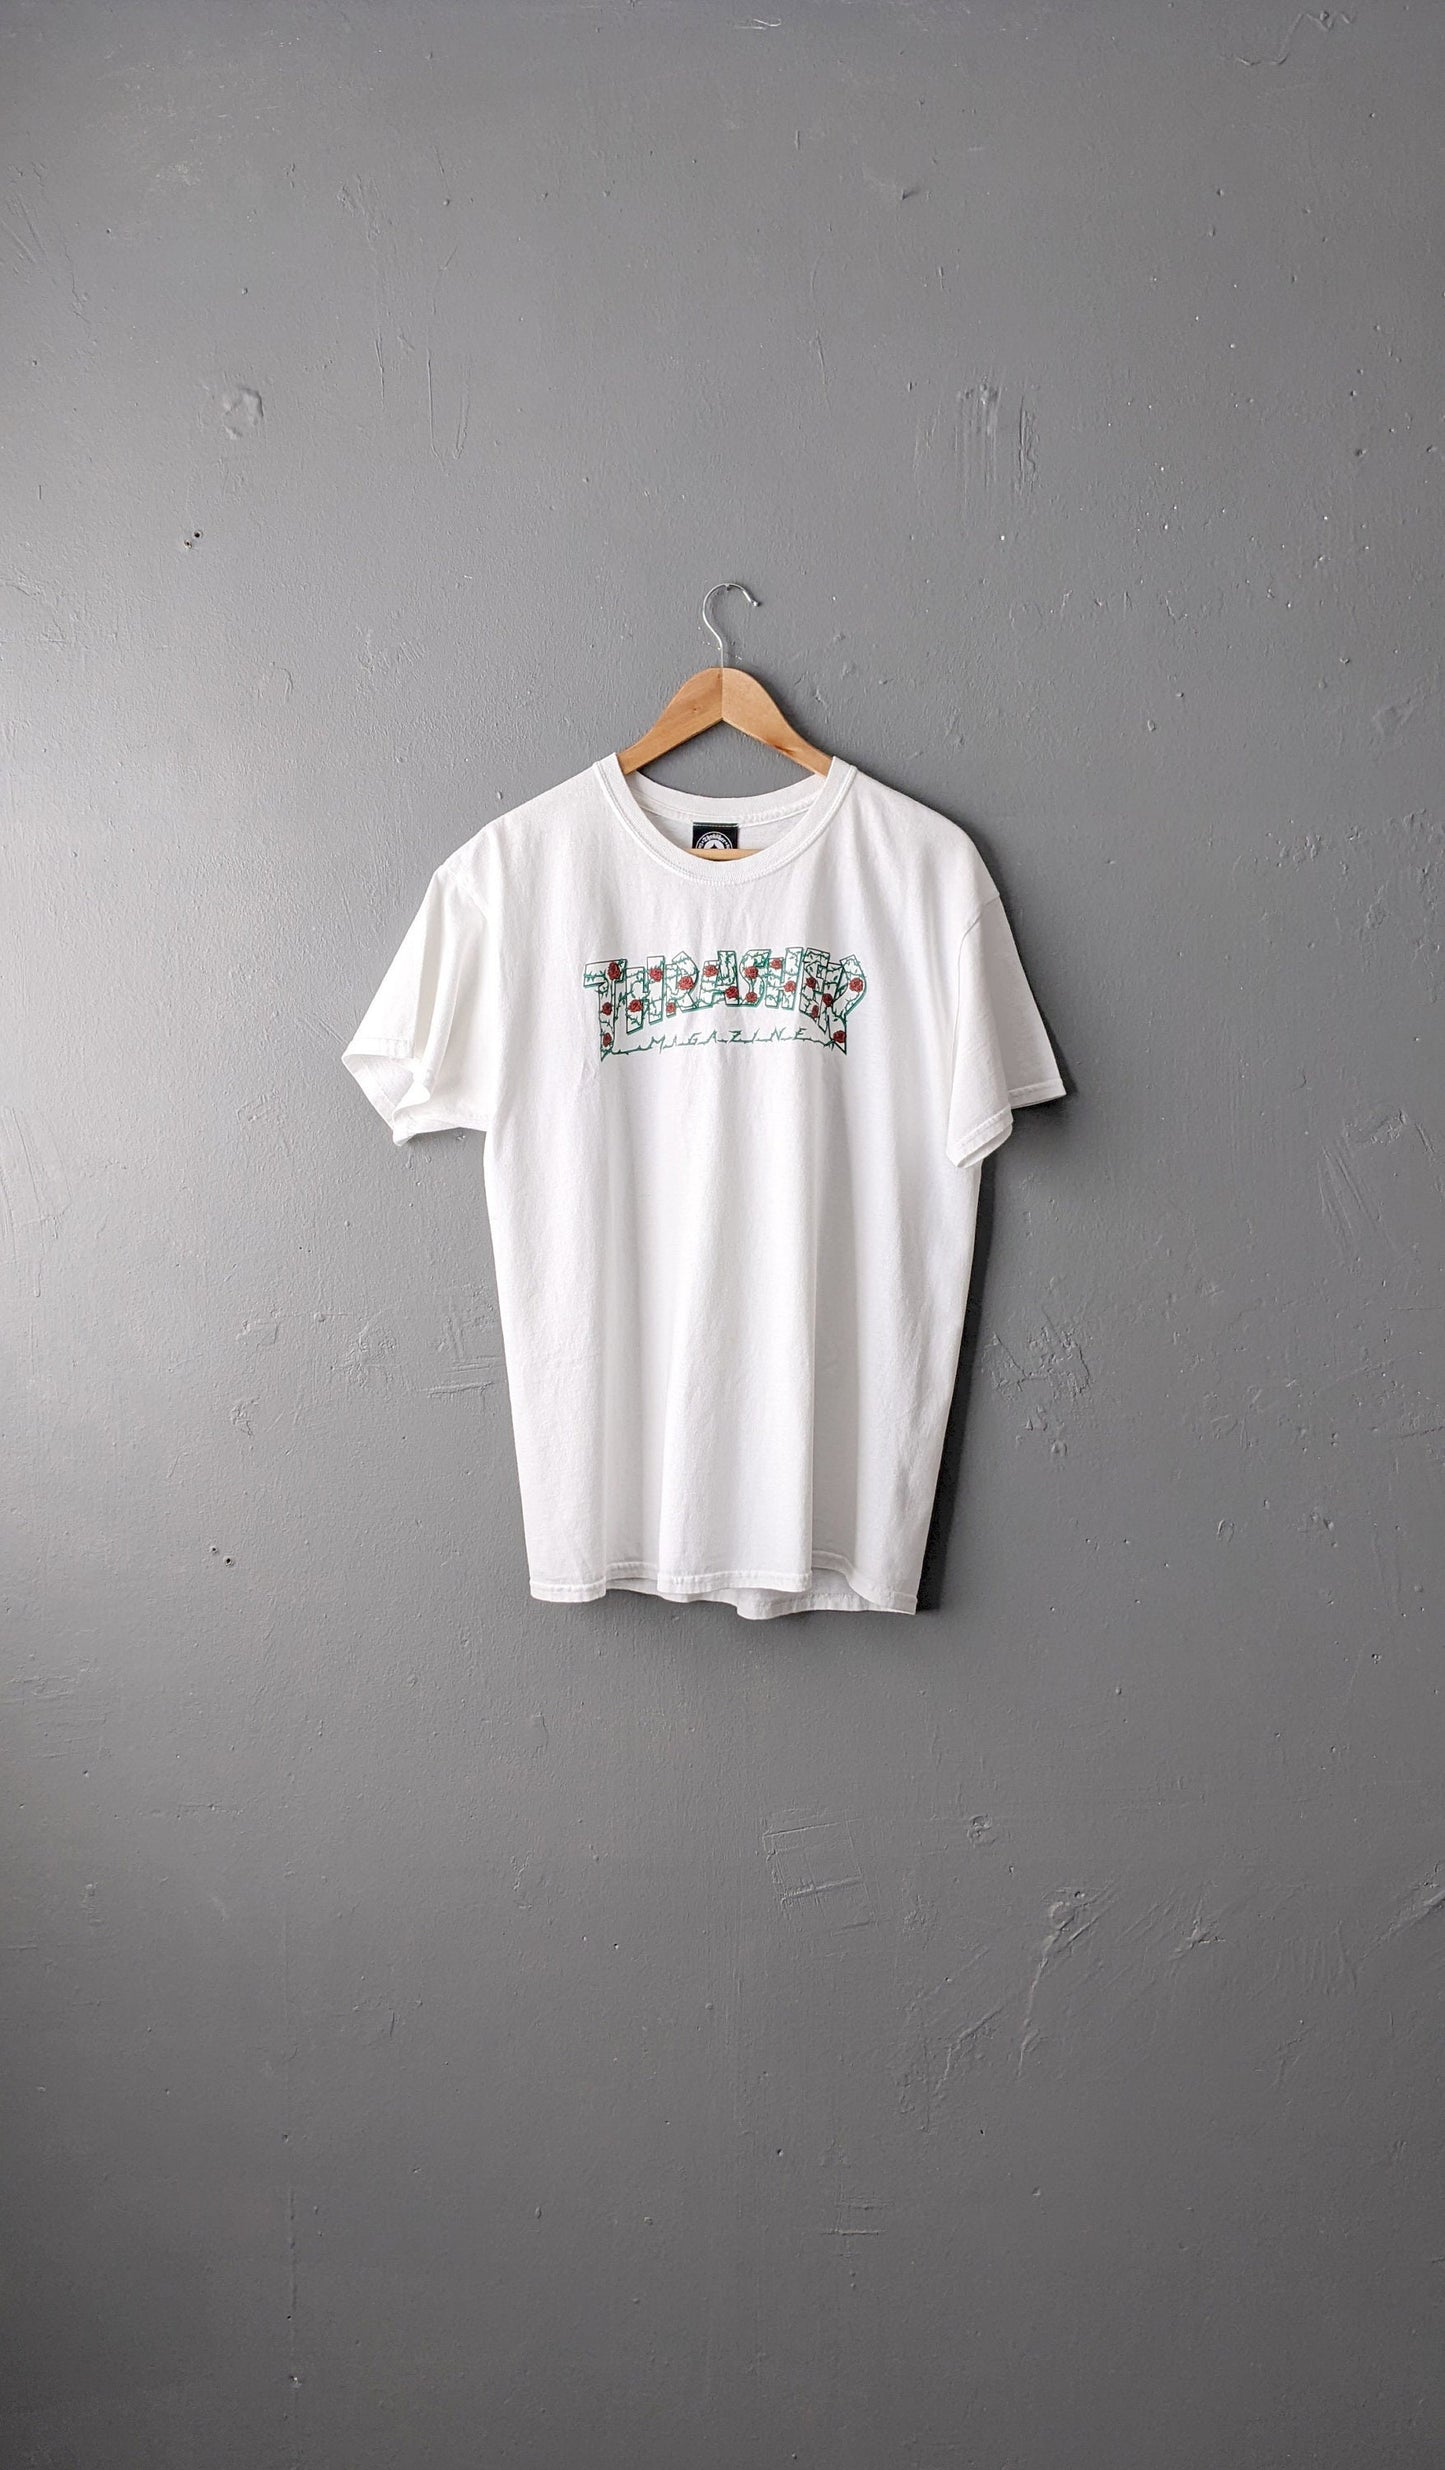 Vintage Thrasher Magazine T shirt, Roses Logo, Skateboarding Tee, Size Medium Large